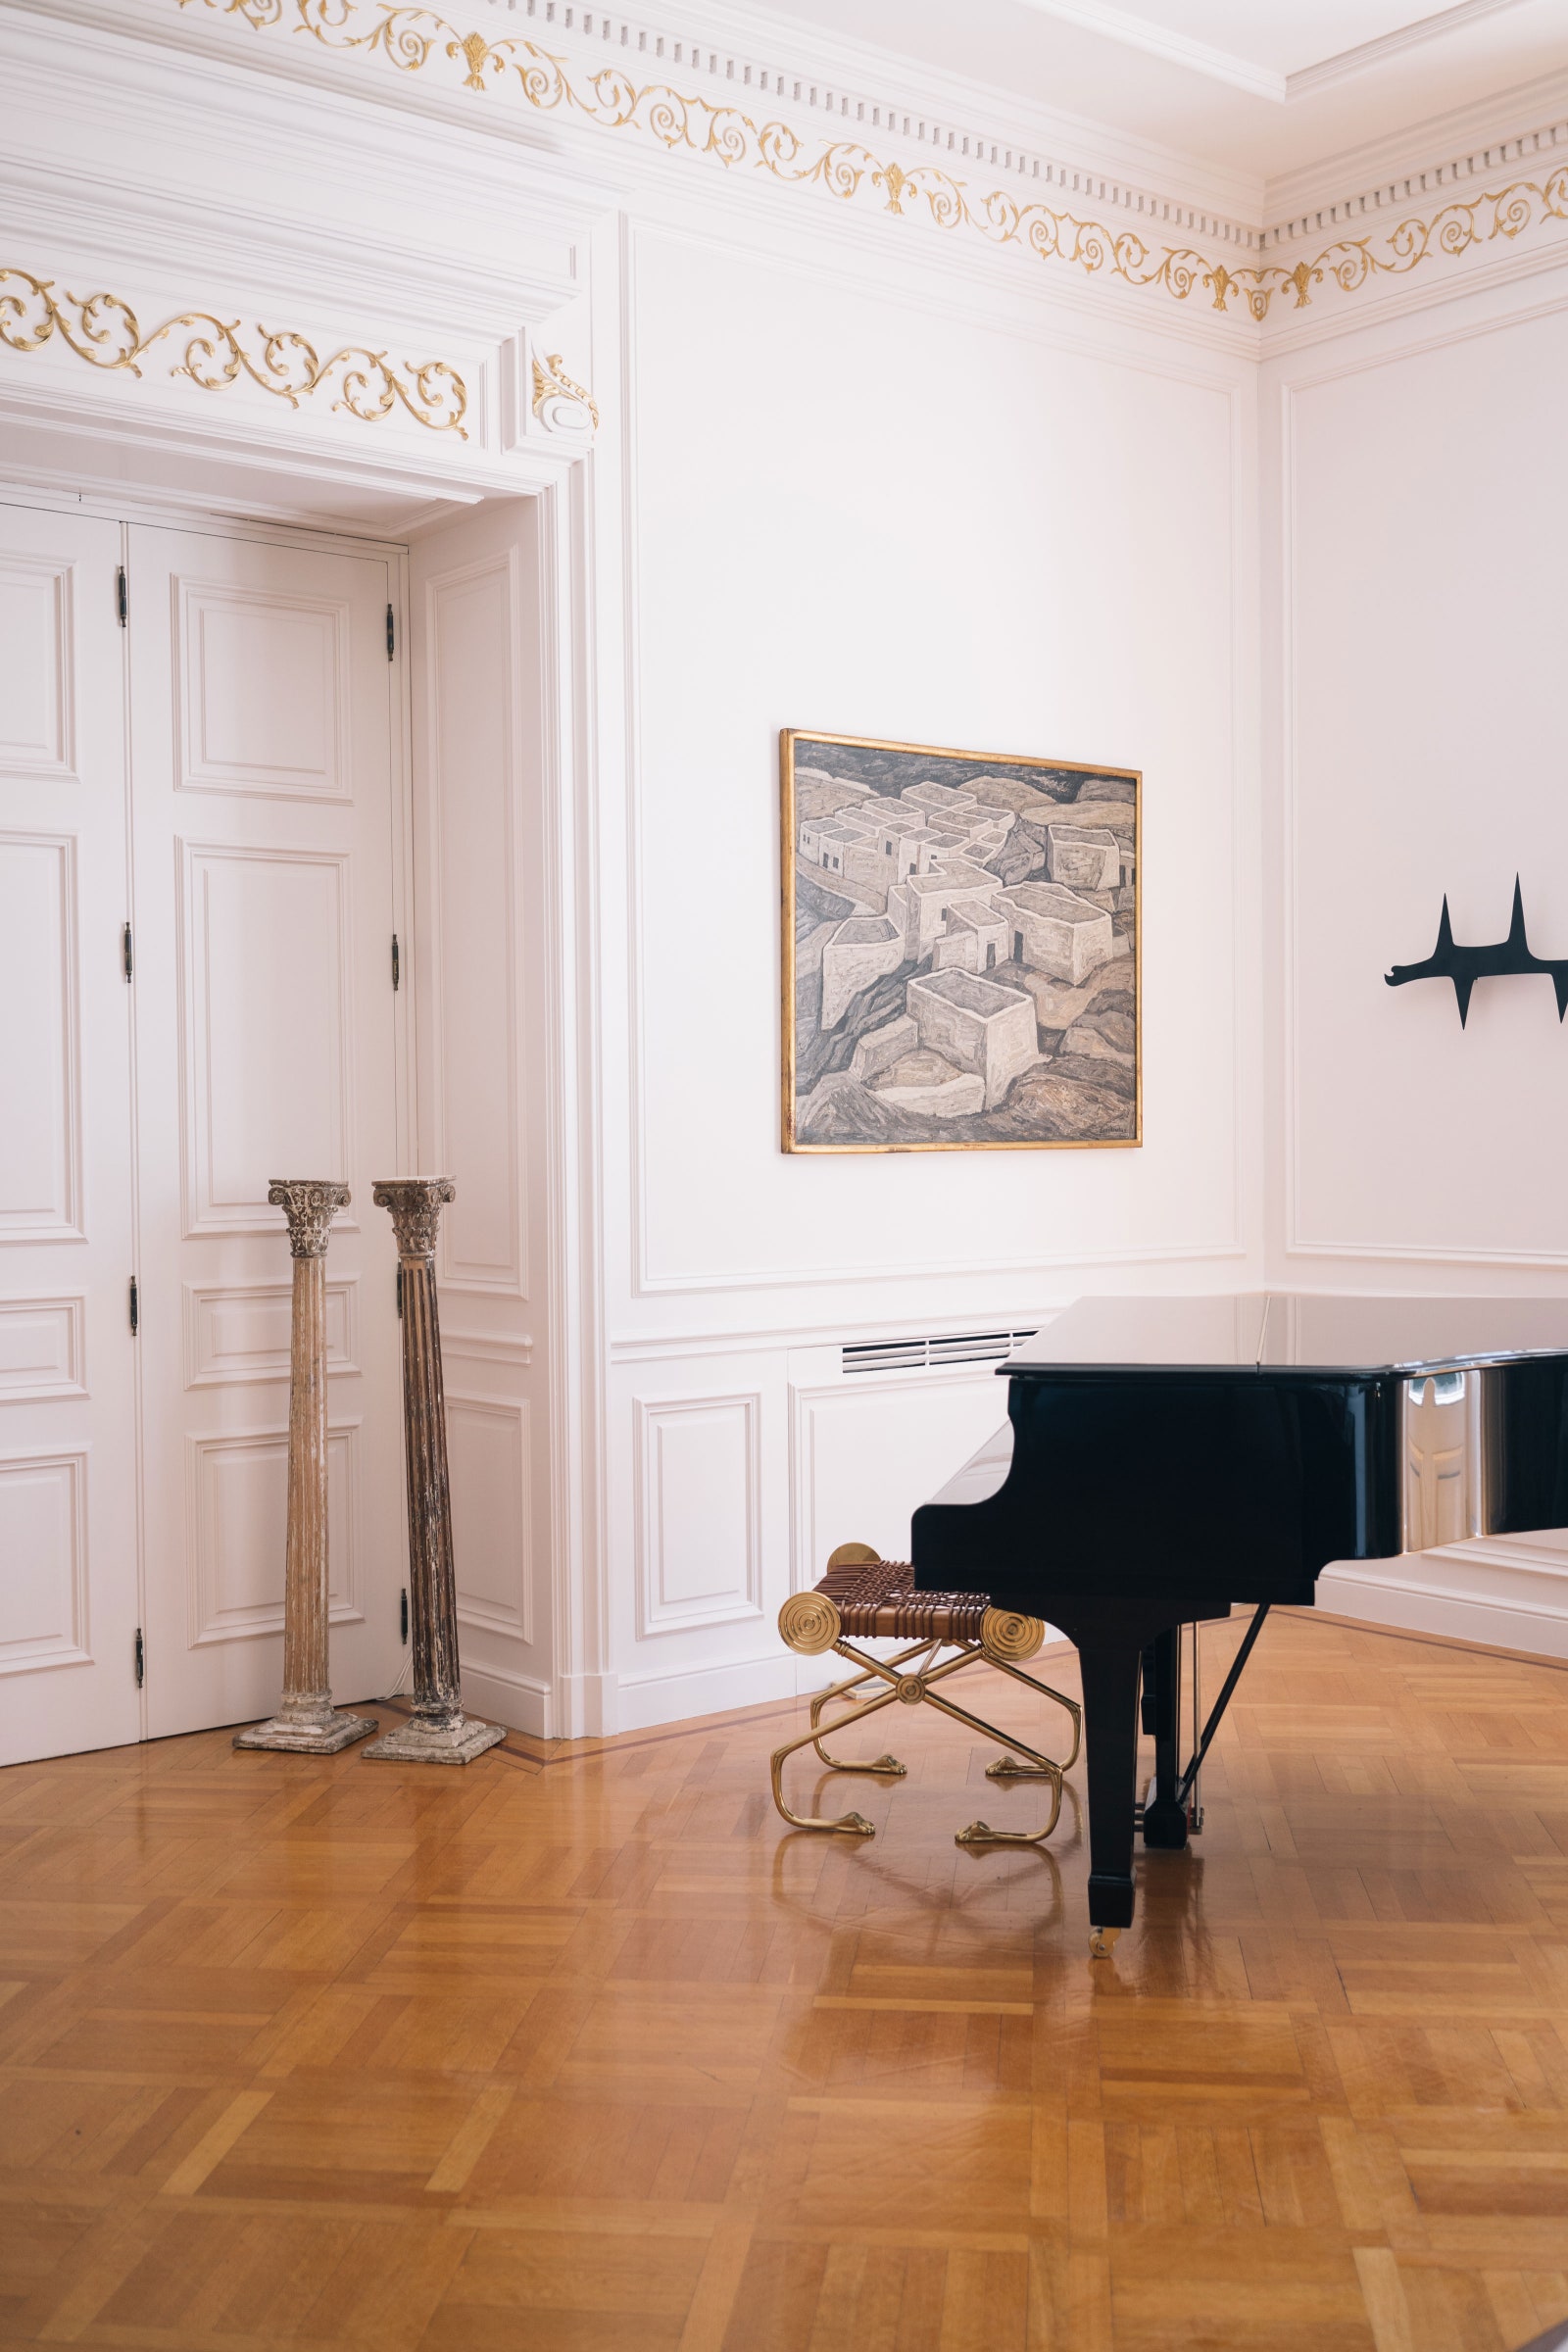 Фортепиано со скамейкой Саридиса находится под “Минотавром” железной скульптурой художника Алекса Милоны.